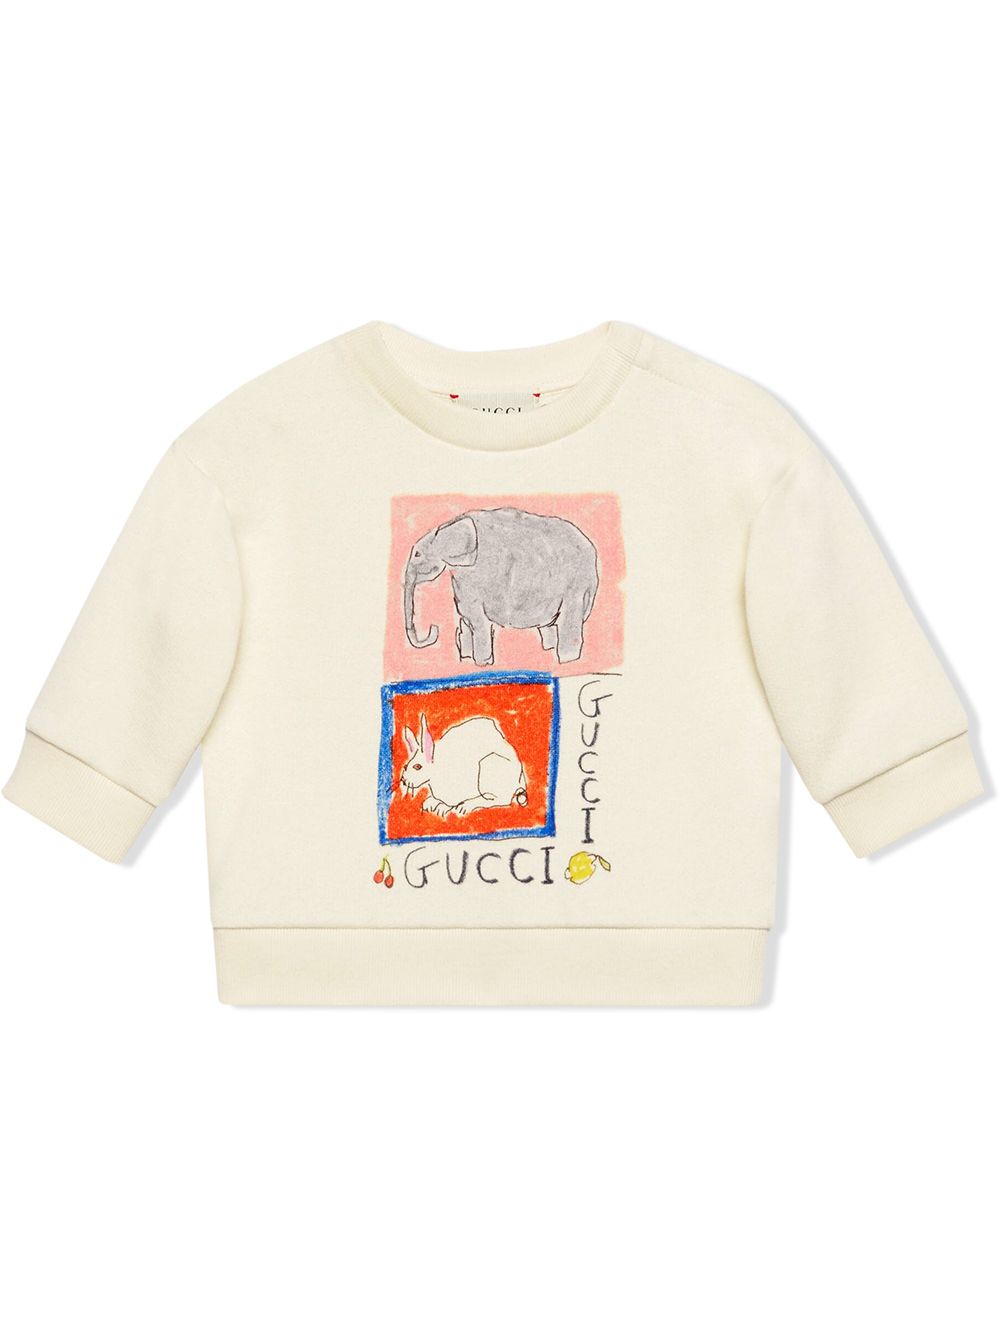 Gucci Kids Isabella Cotier Print Sweatshirt - Farfetch